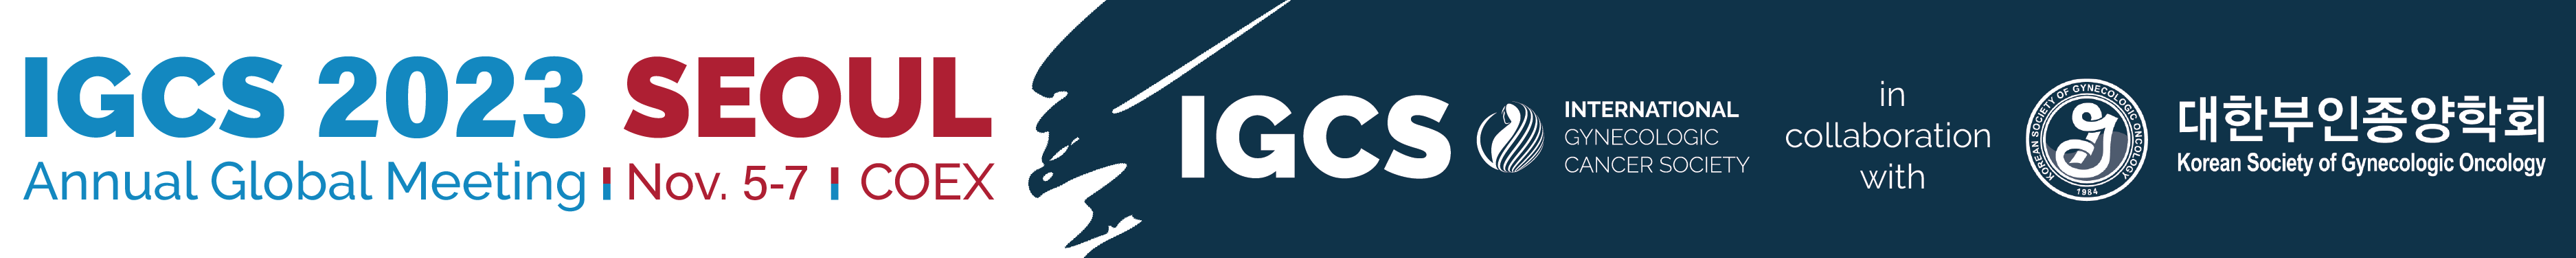 IGCS logo